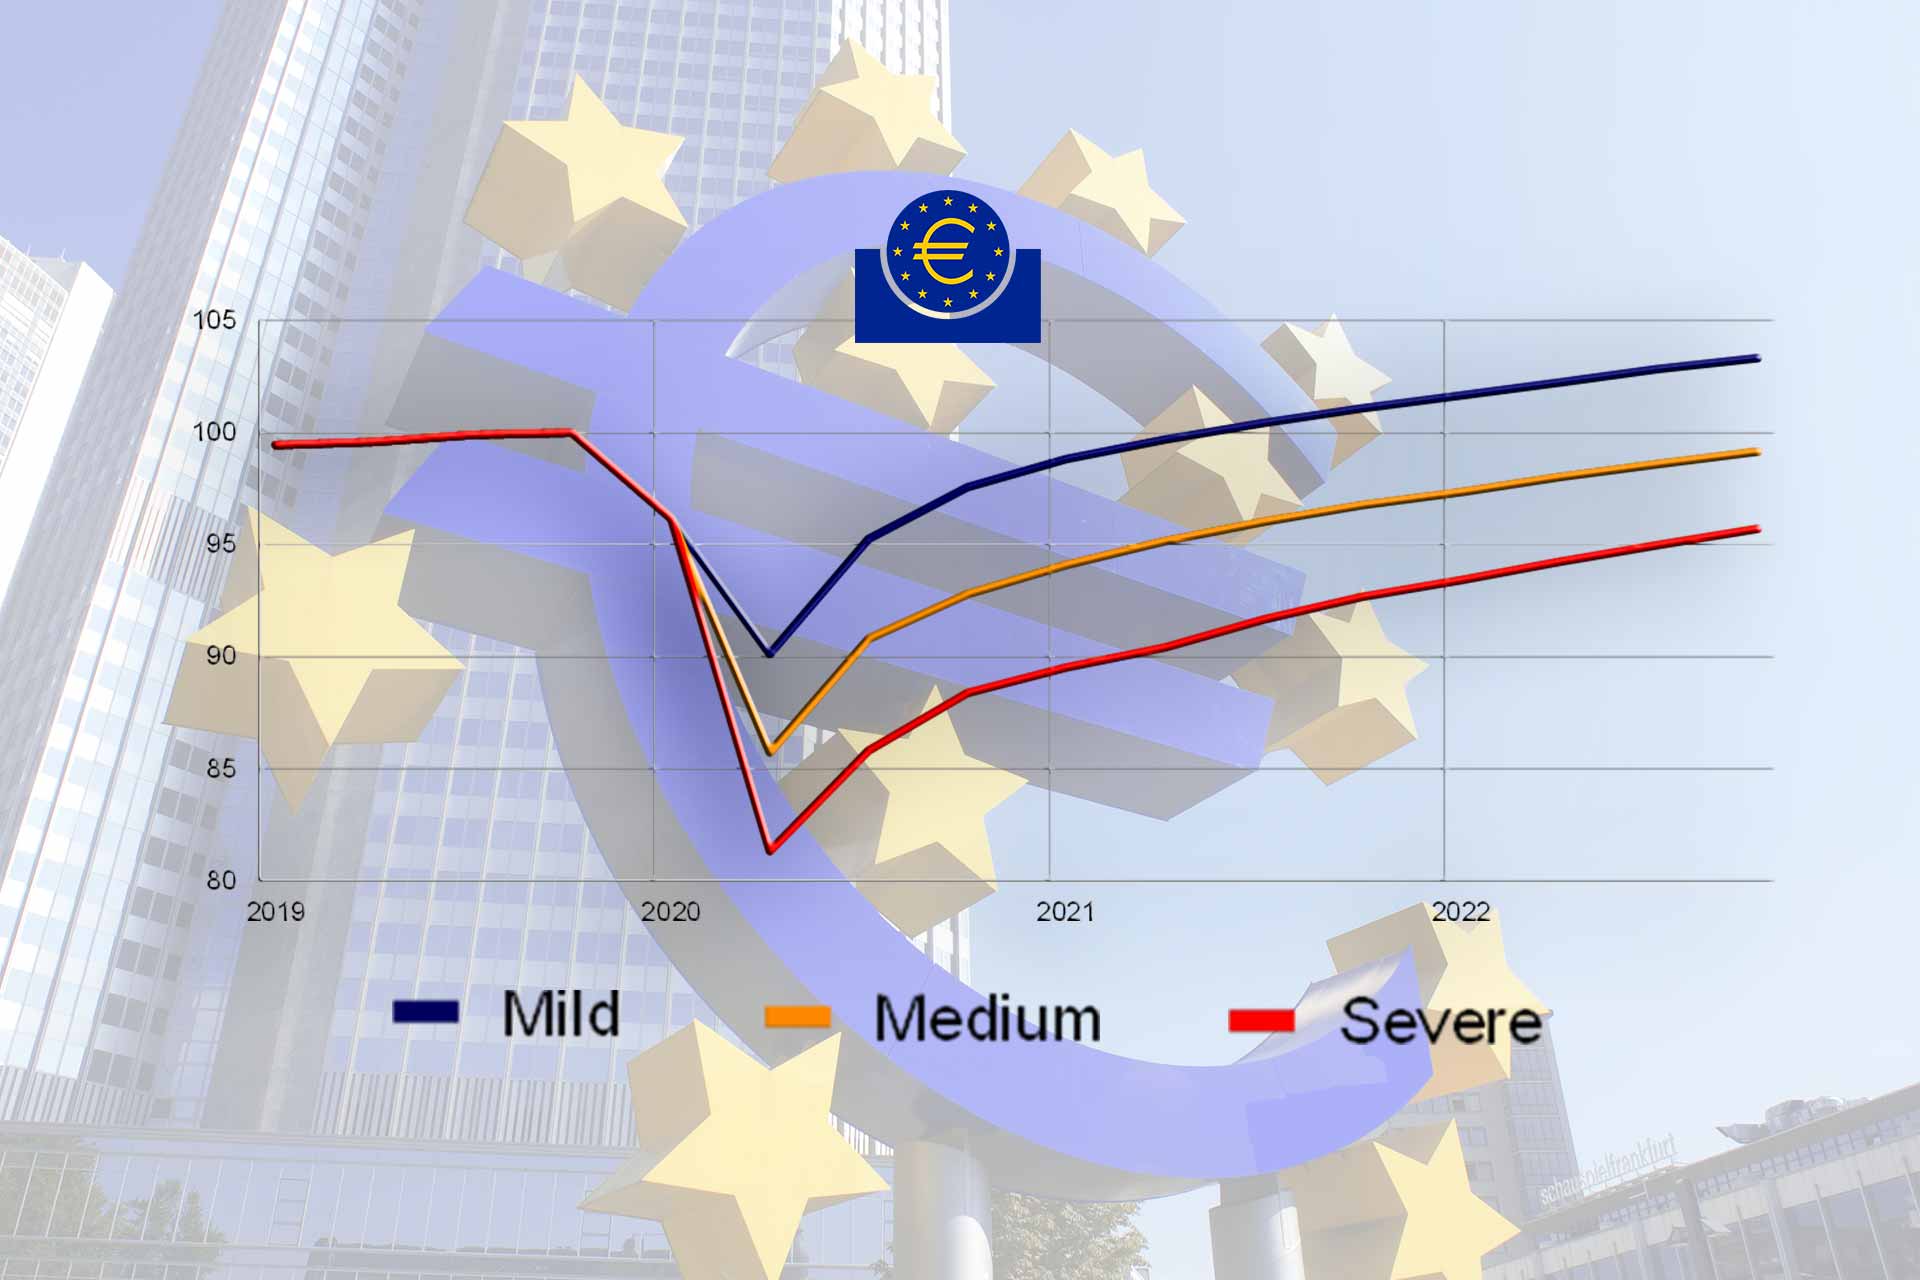 Euro area real GDP scenarios under the mild, medium and severe scenarios